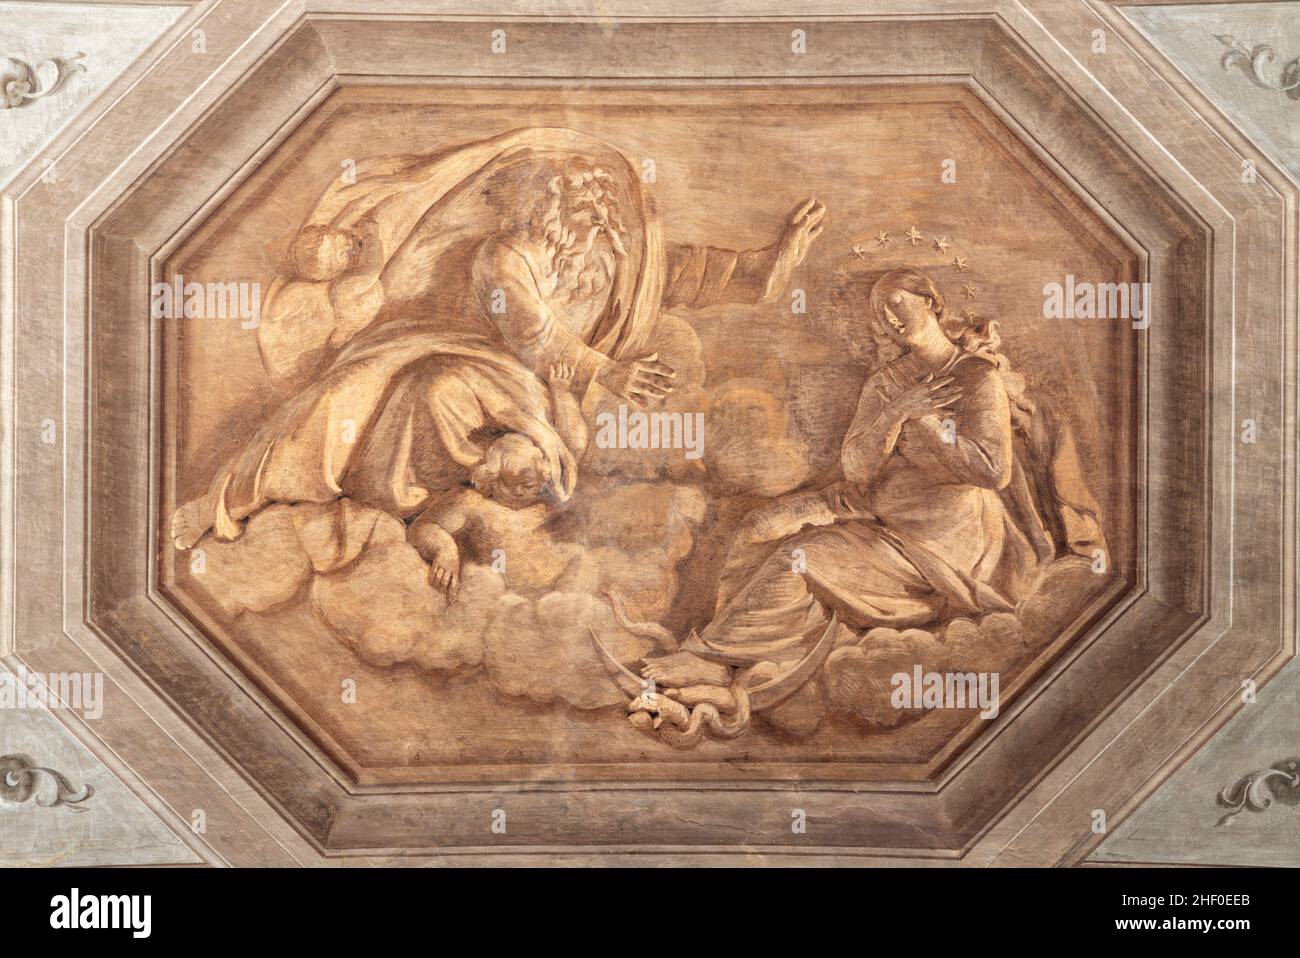 ROME, ITALY - AUGUST 31, 2021: The fresco of God the Father and the Immaculate Conception in church Santa Maria della Concezione dei Cappuccini. Stock Photo